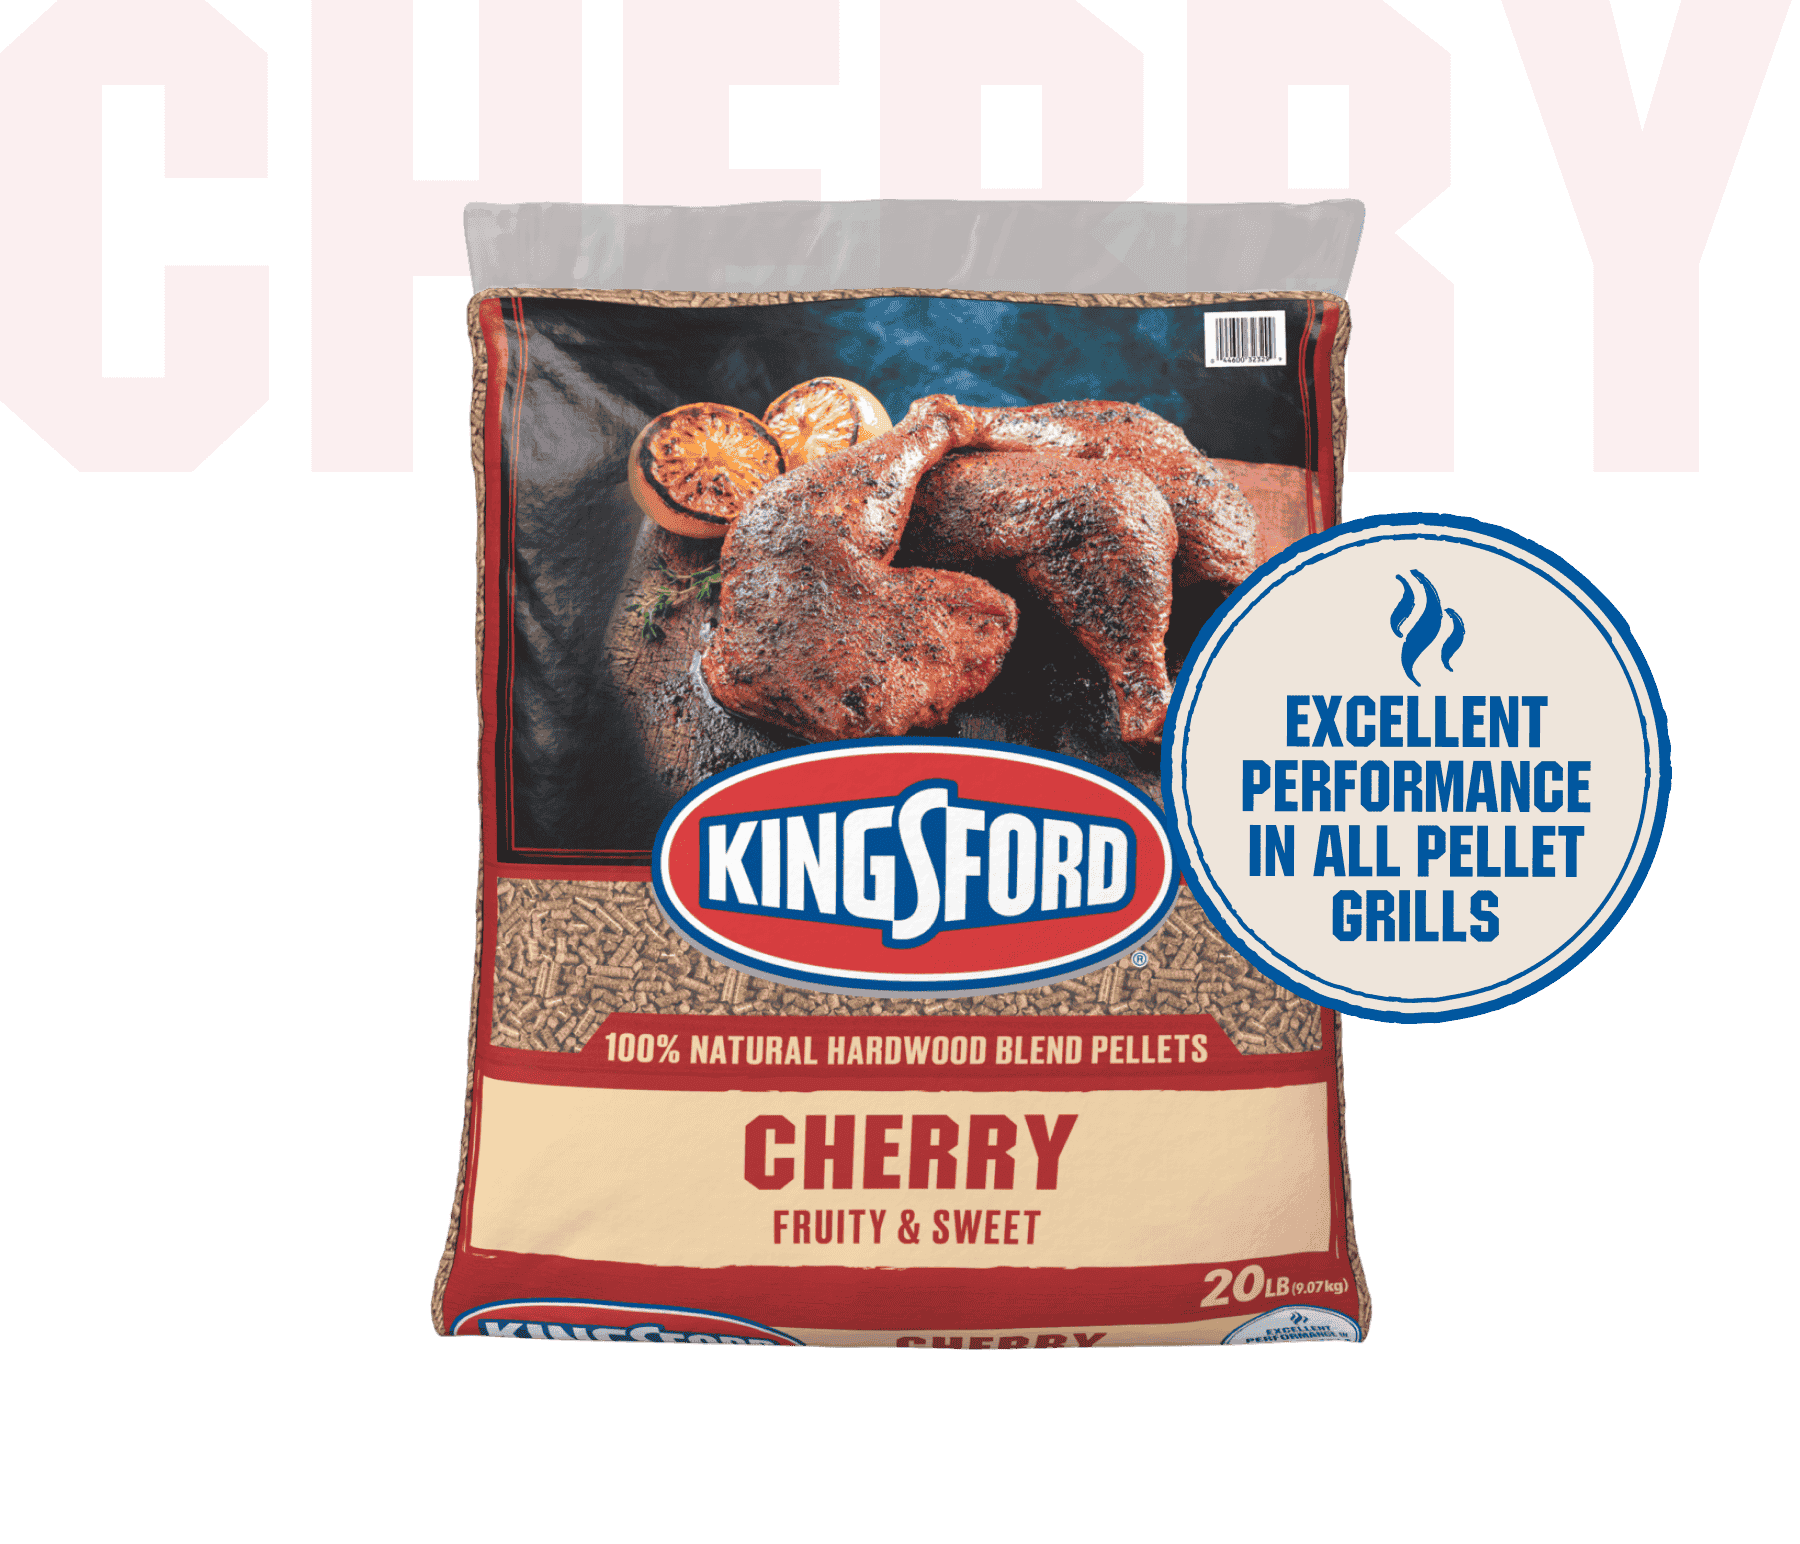 Kingsford® 100% Natural Hardwood Blend Pellets, Cherry, 20 lb